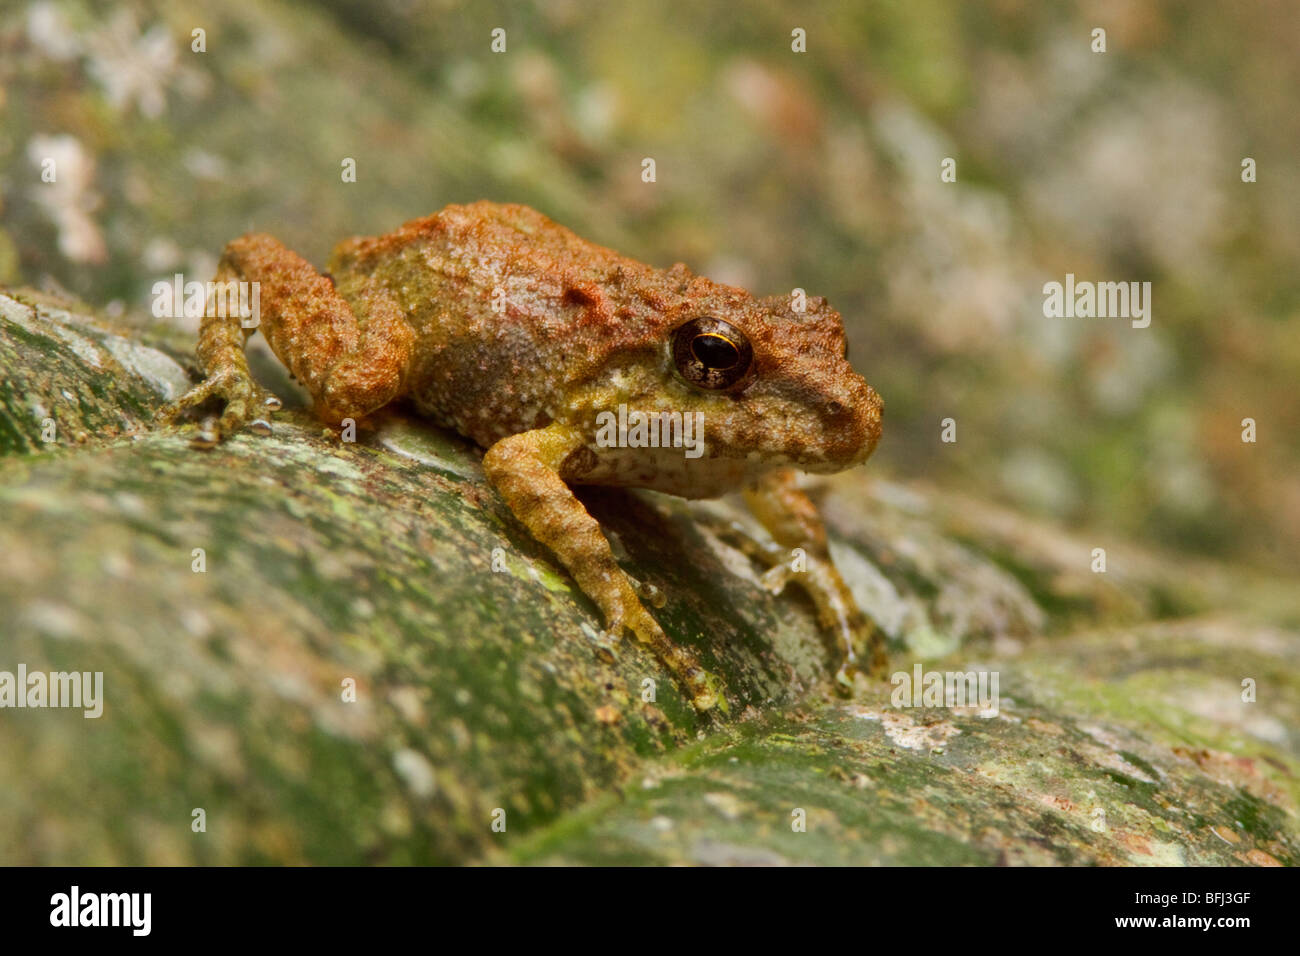 A treefrog in the Tandayapa Valley of Ecuador. Stock Photo